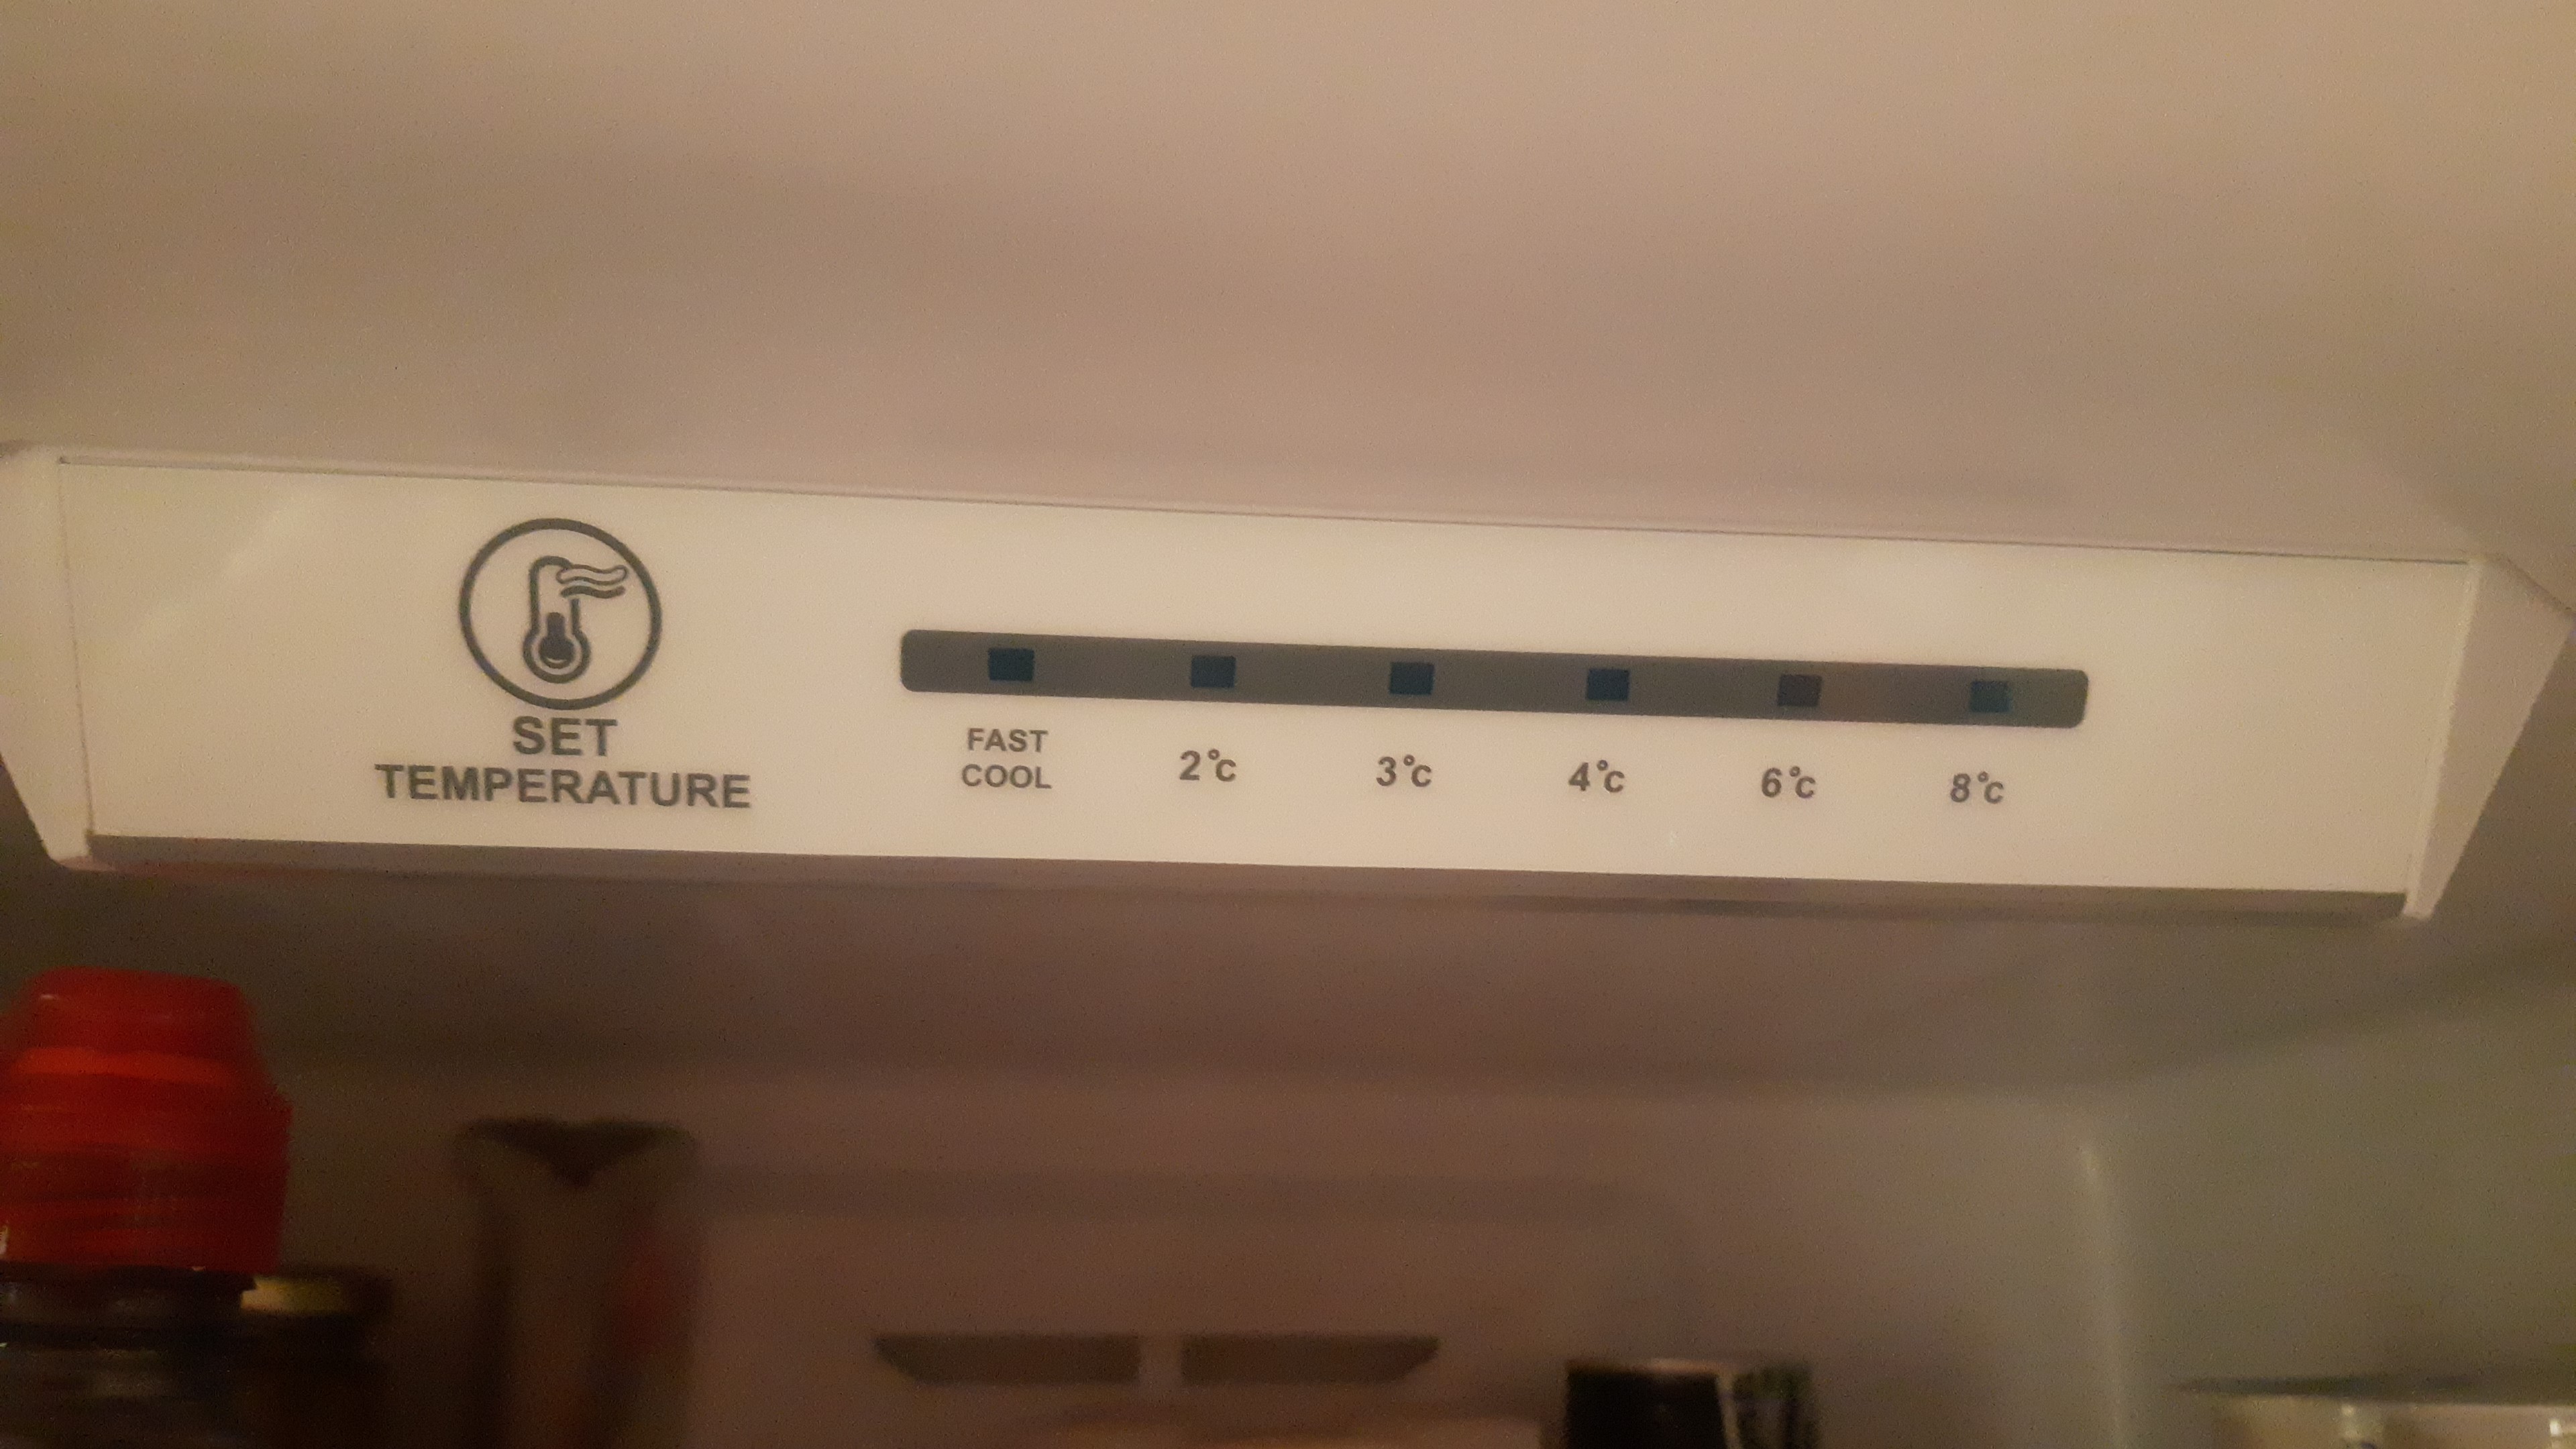 Ik wil graag weten op welk getal mijn koelkast het meest koelt,